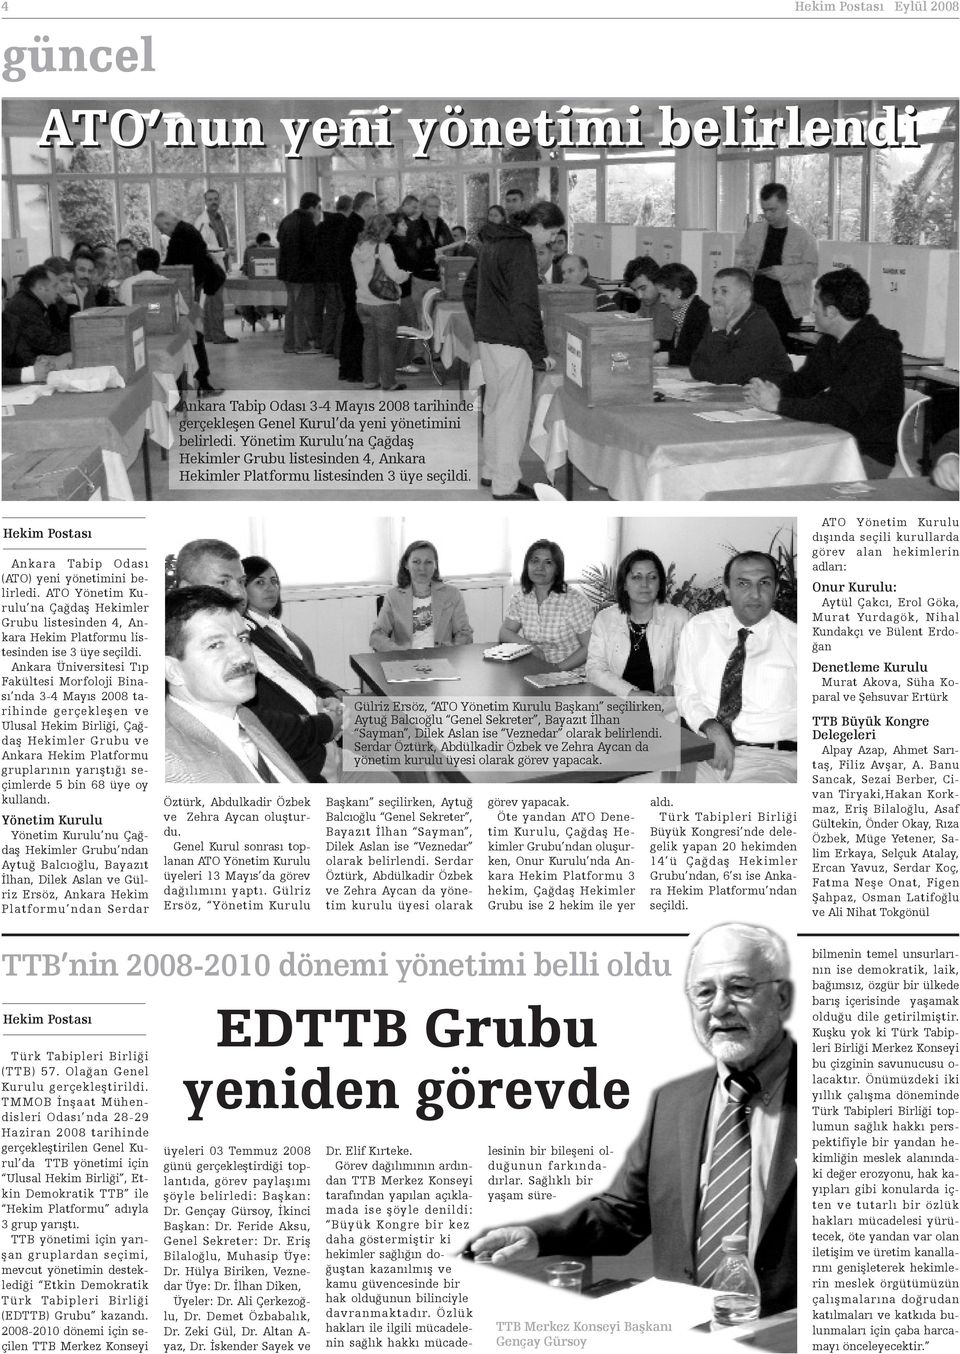 ATO Yönetim Kurulu na Çaðdaþ Hekimler Grubu listesinden 4, Ankara Hekim Platformu listesinden ise 3 üye seçildi.